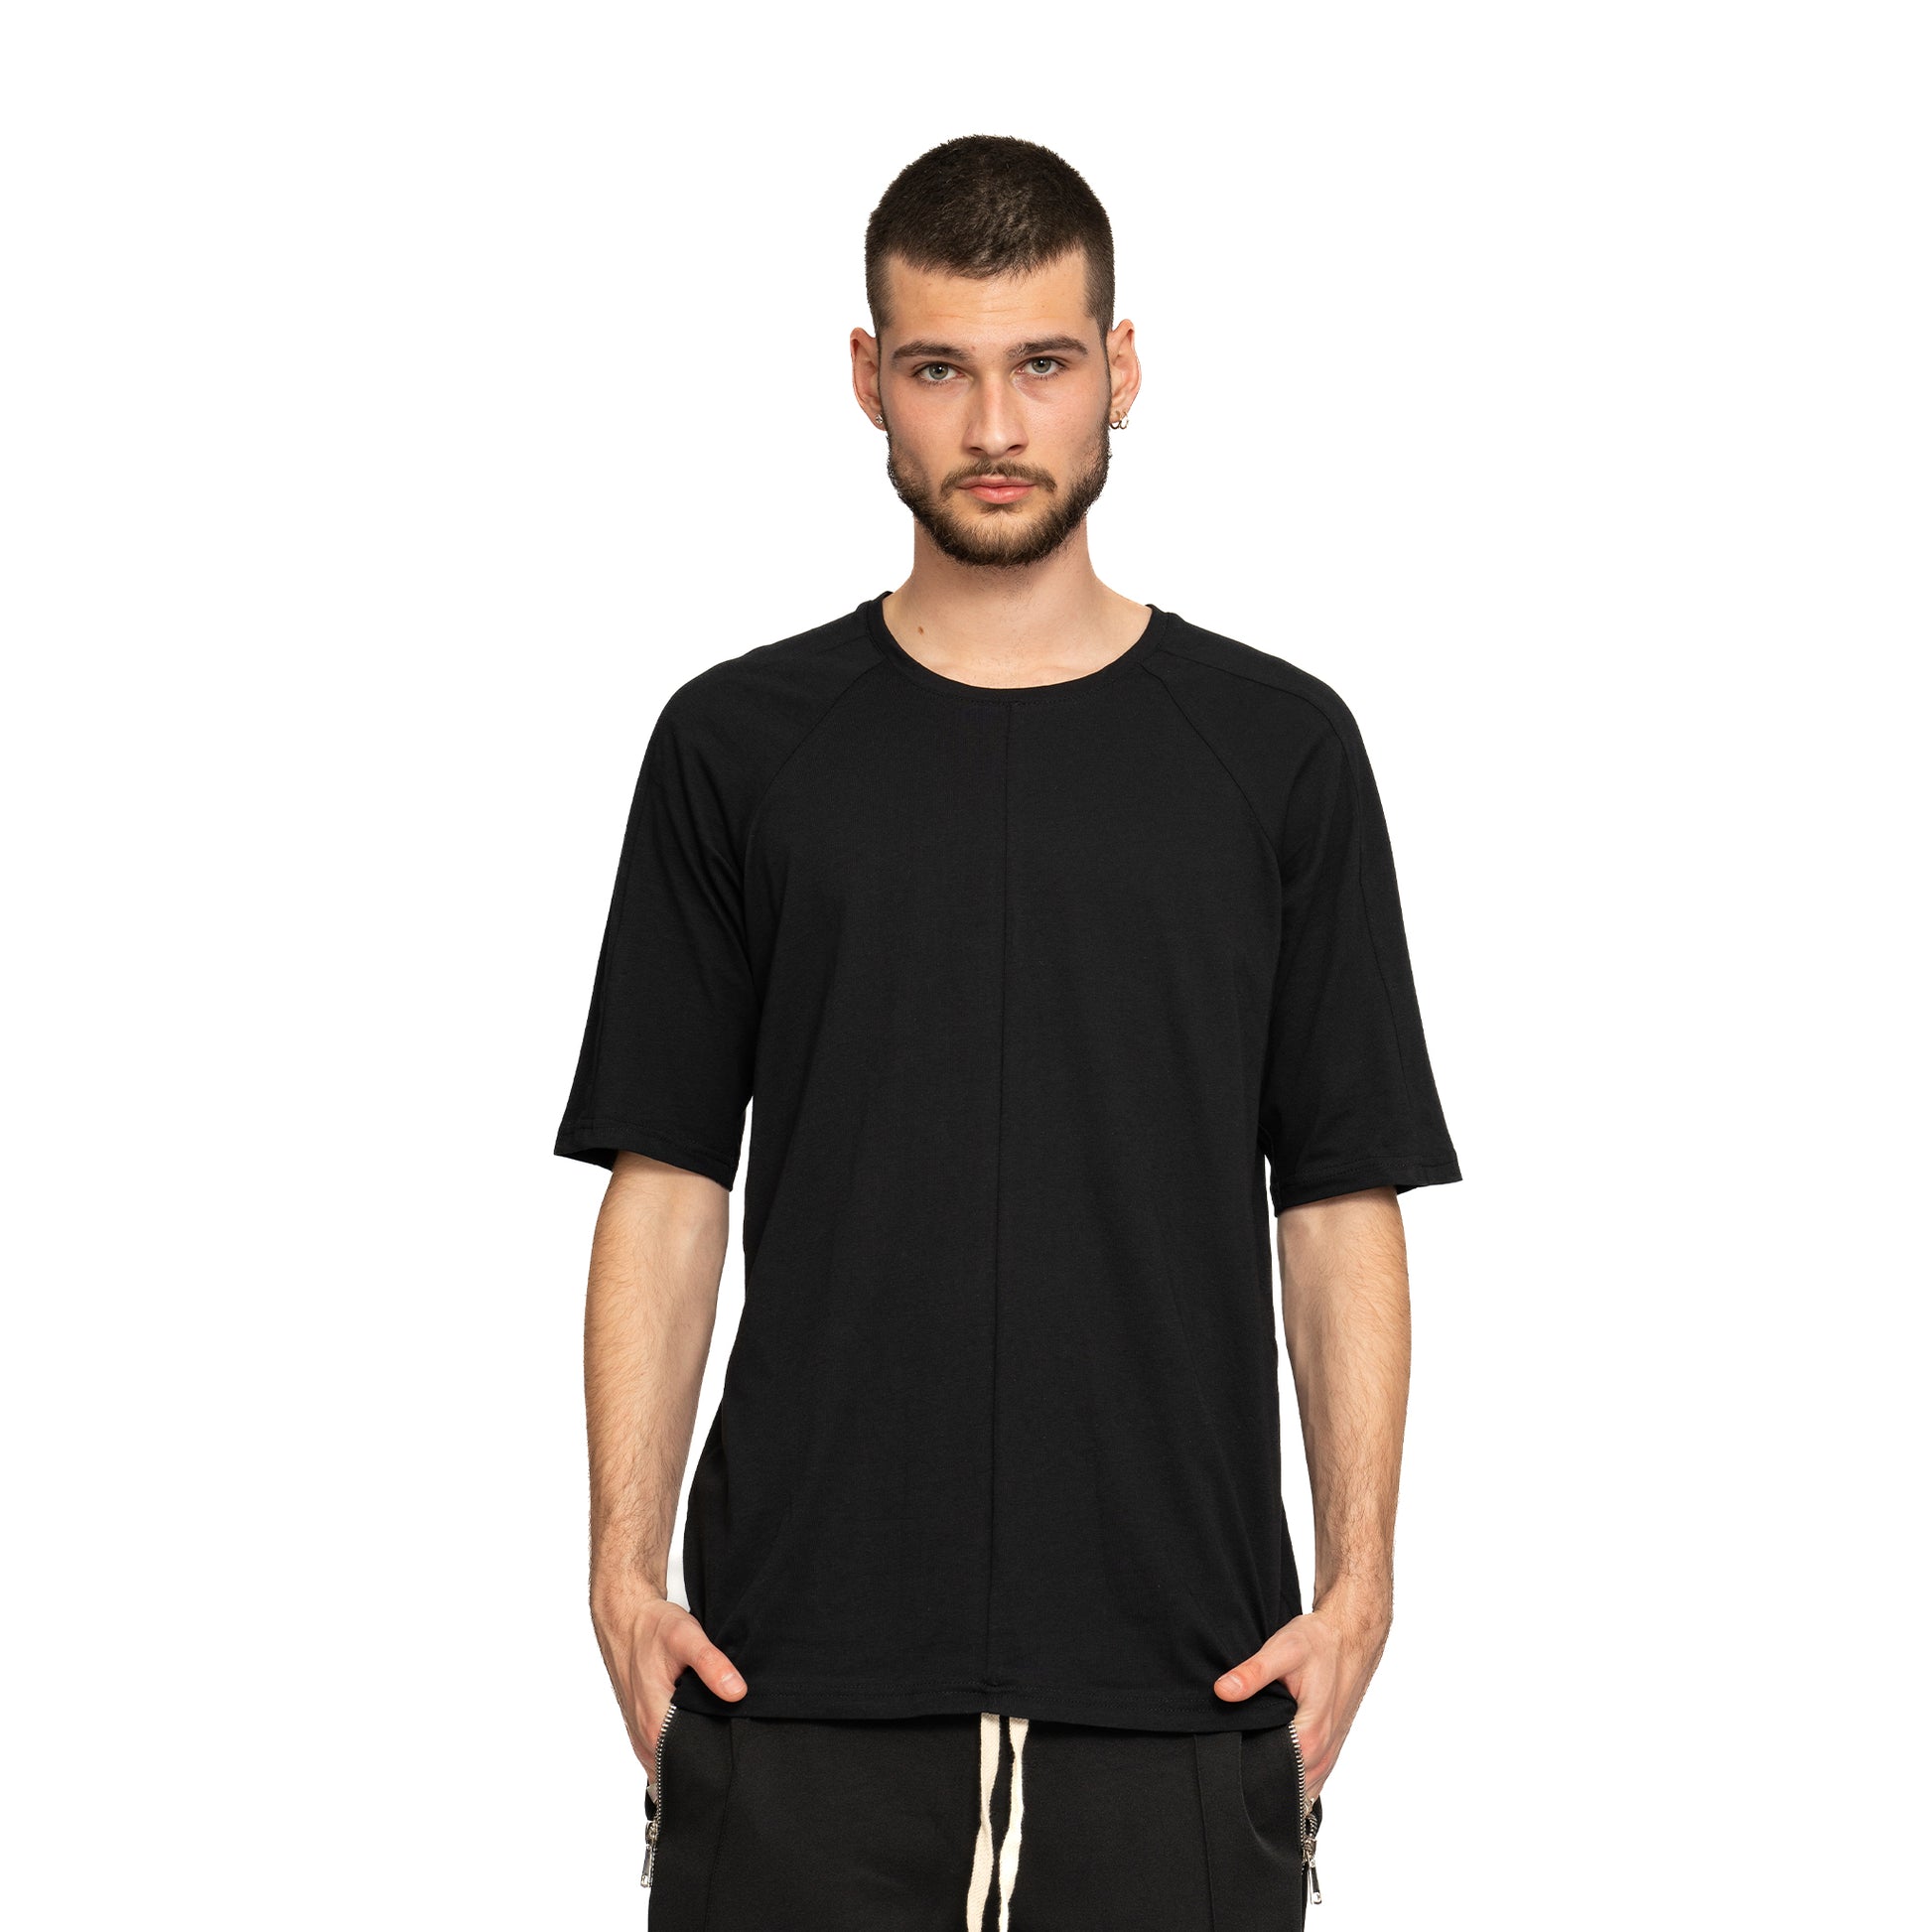 vagabond reflectss tricou negru cu maneca trei sferturi